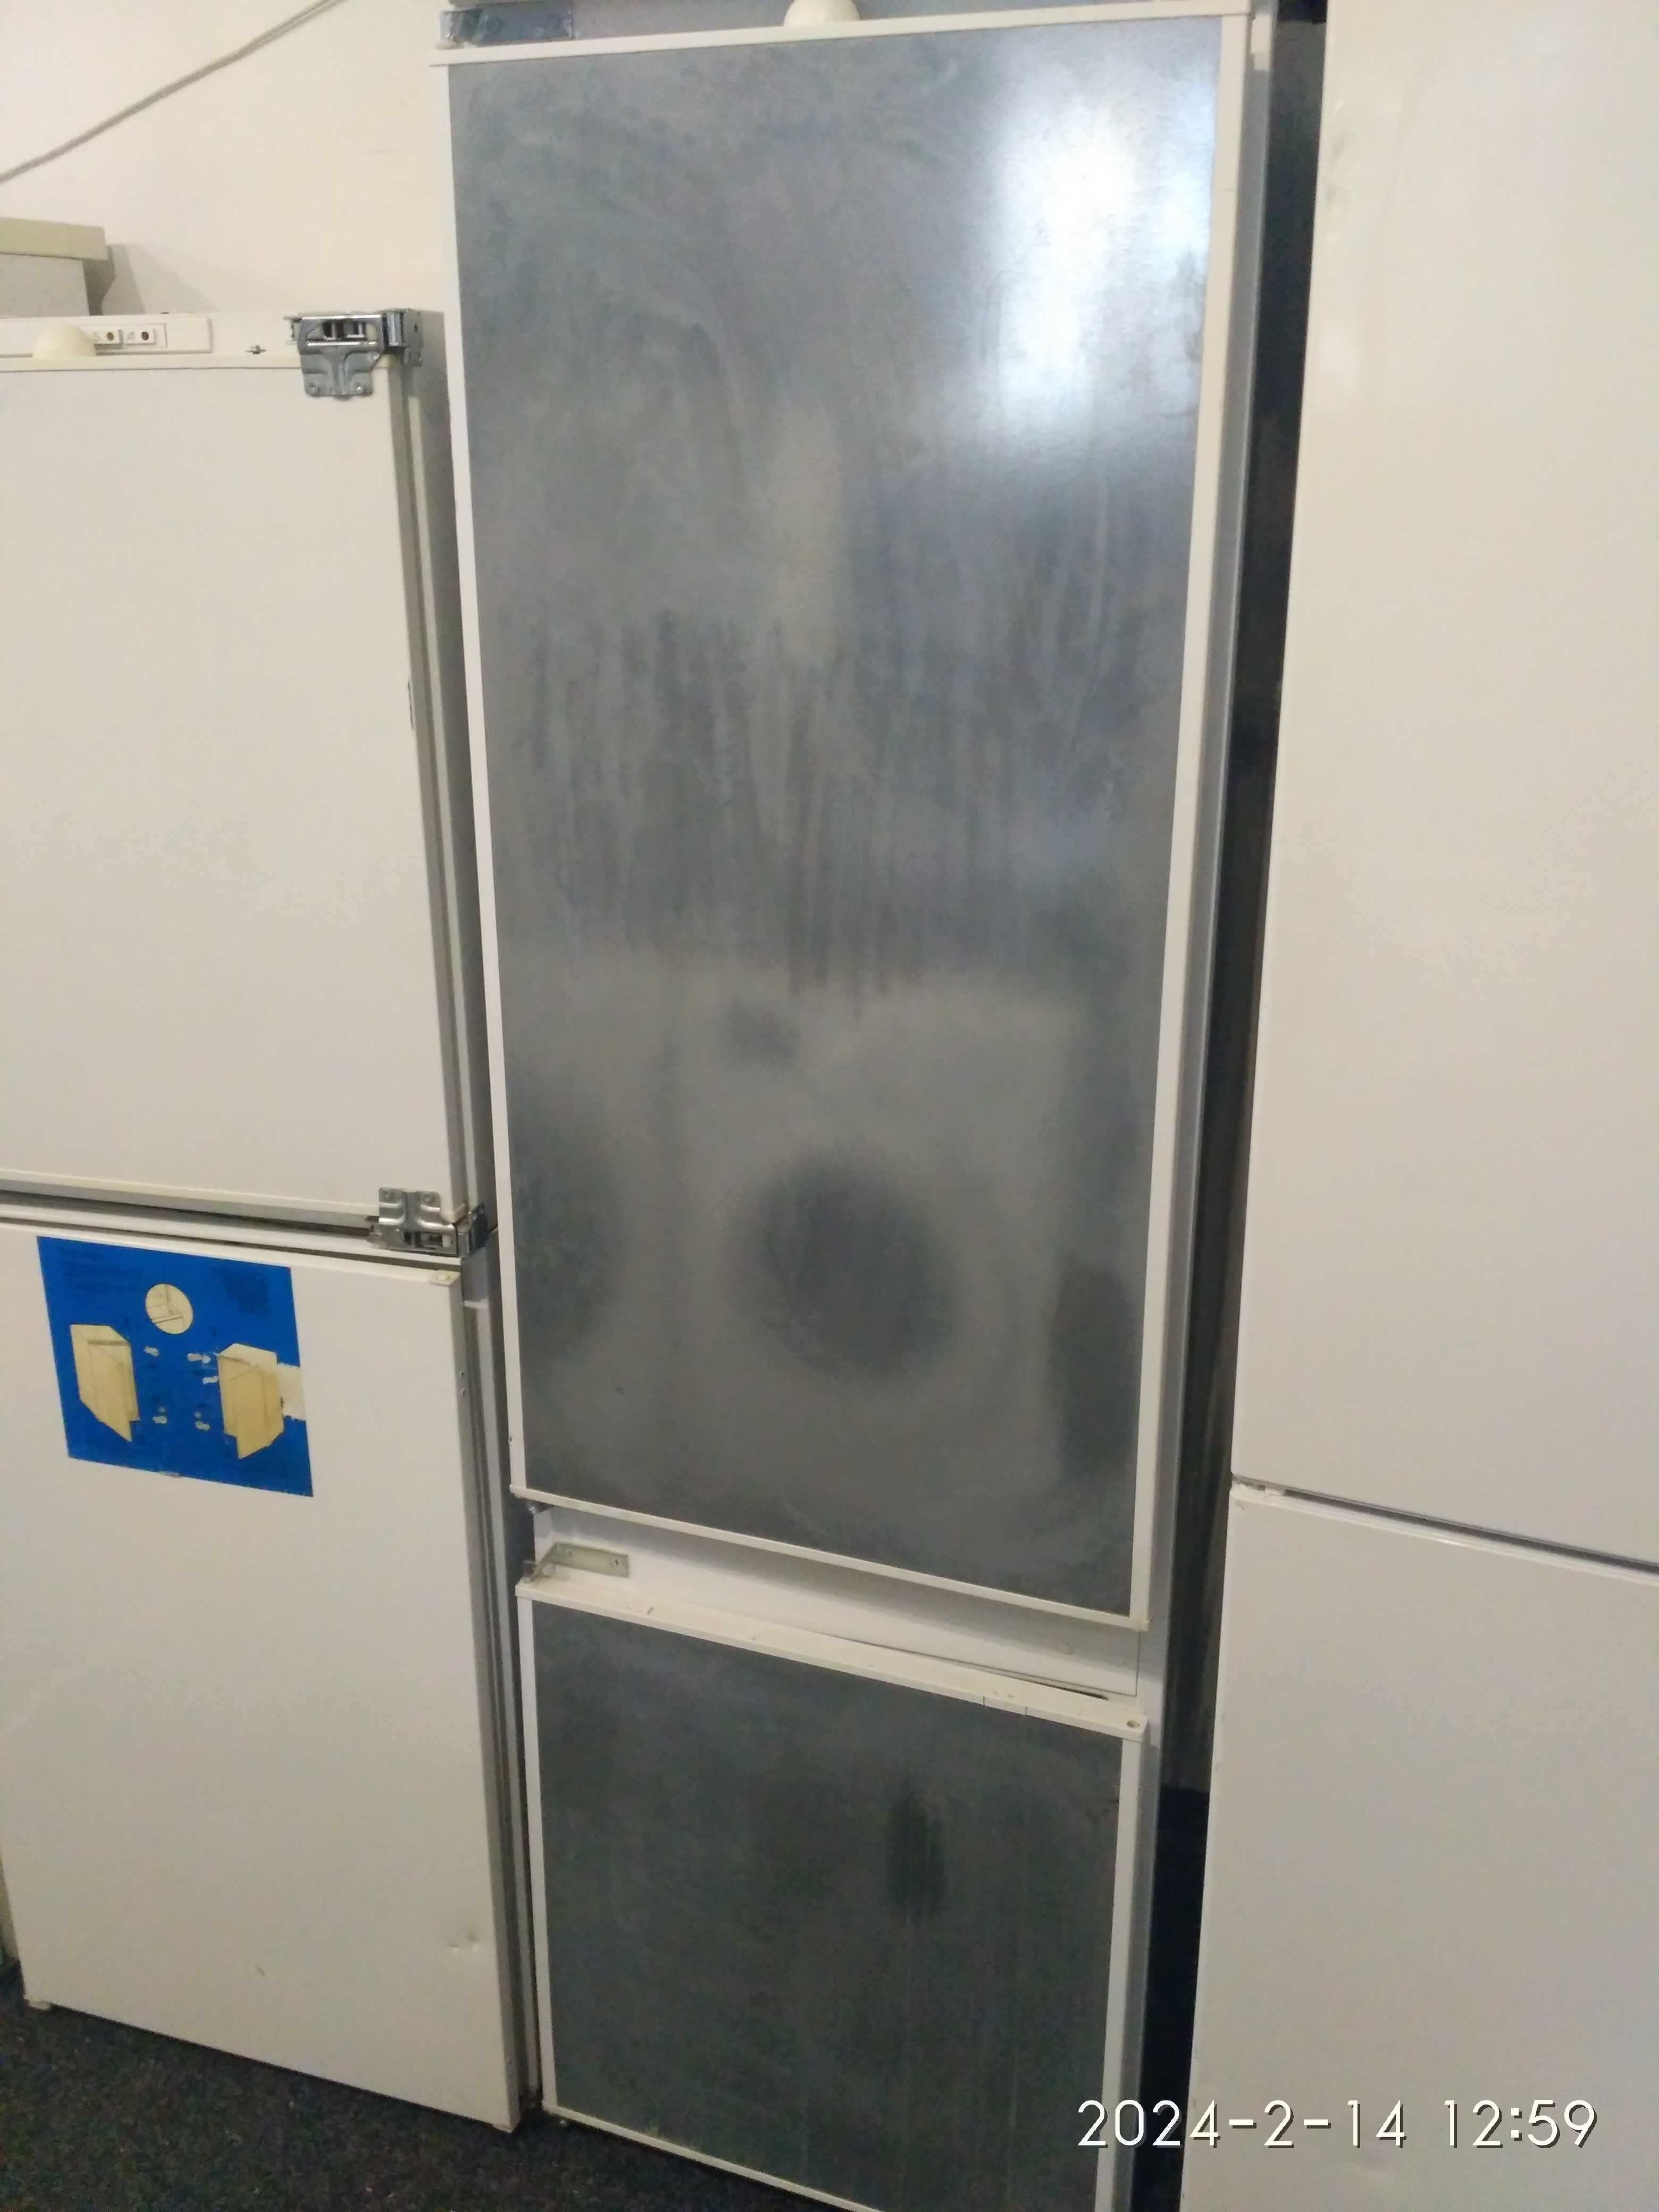 2кам.холодильник під забудову Siemens.